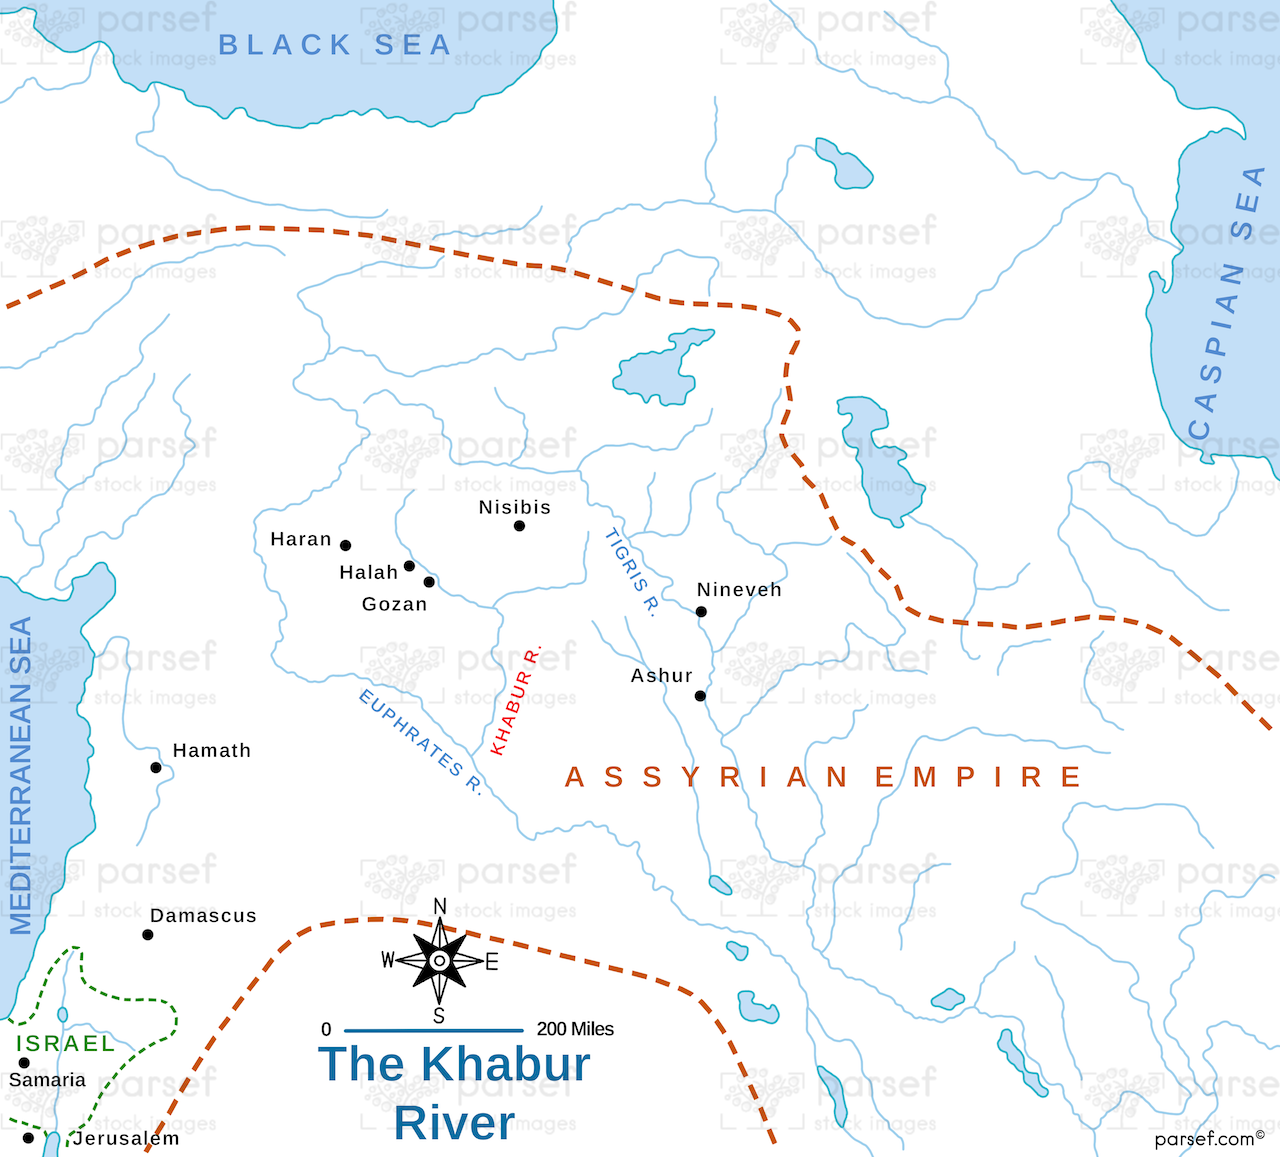 The Khabur River Map image